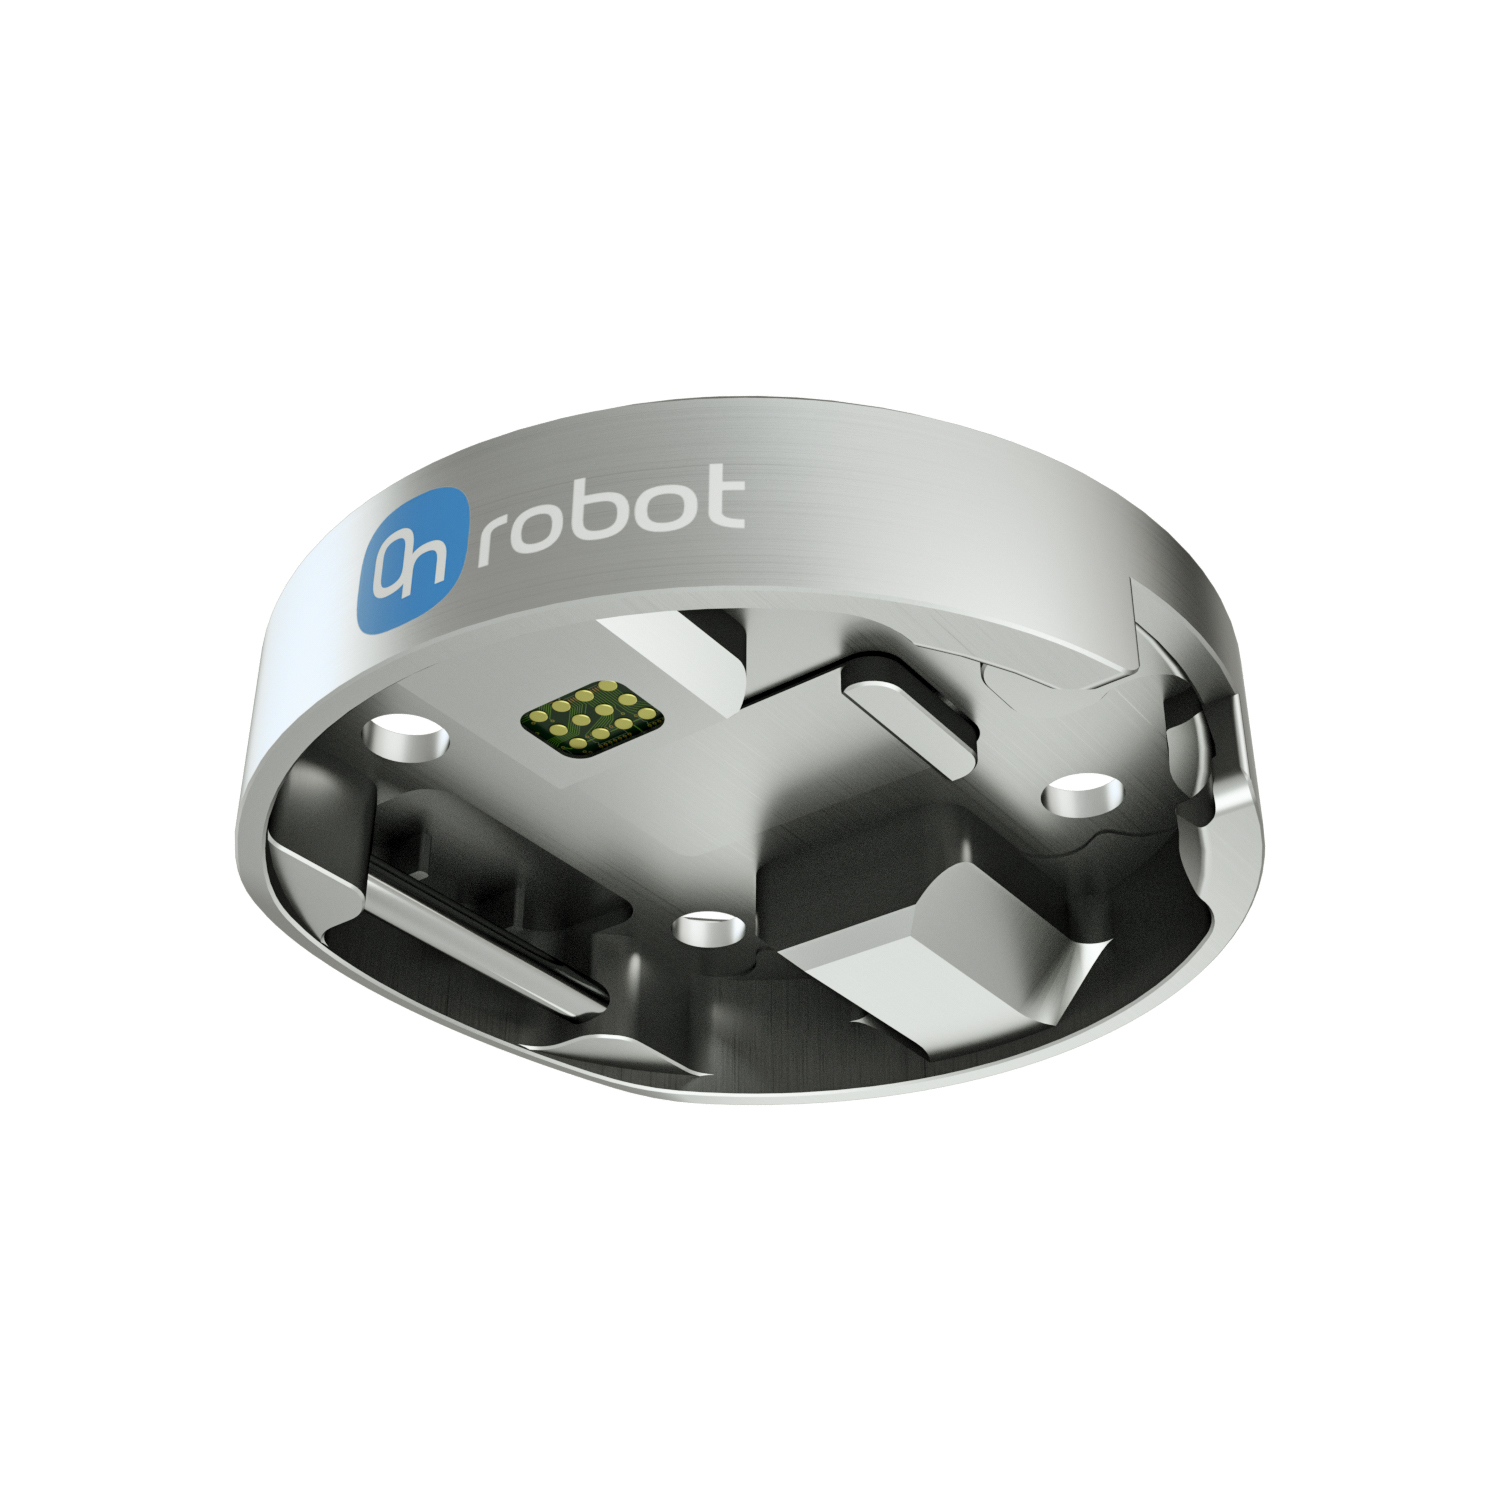 OnRobot Quick Changer 4.5A - robot side